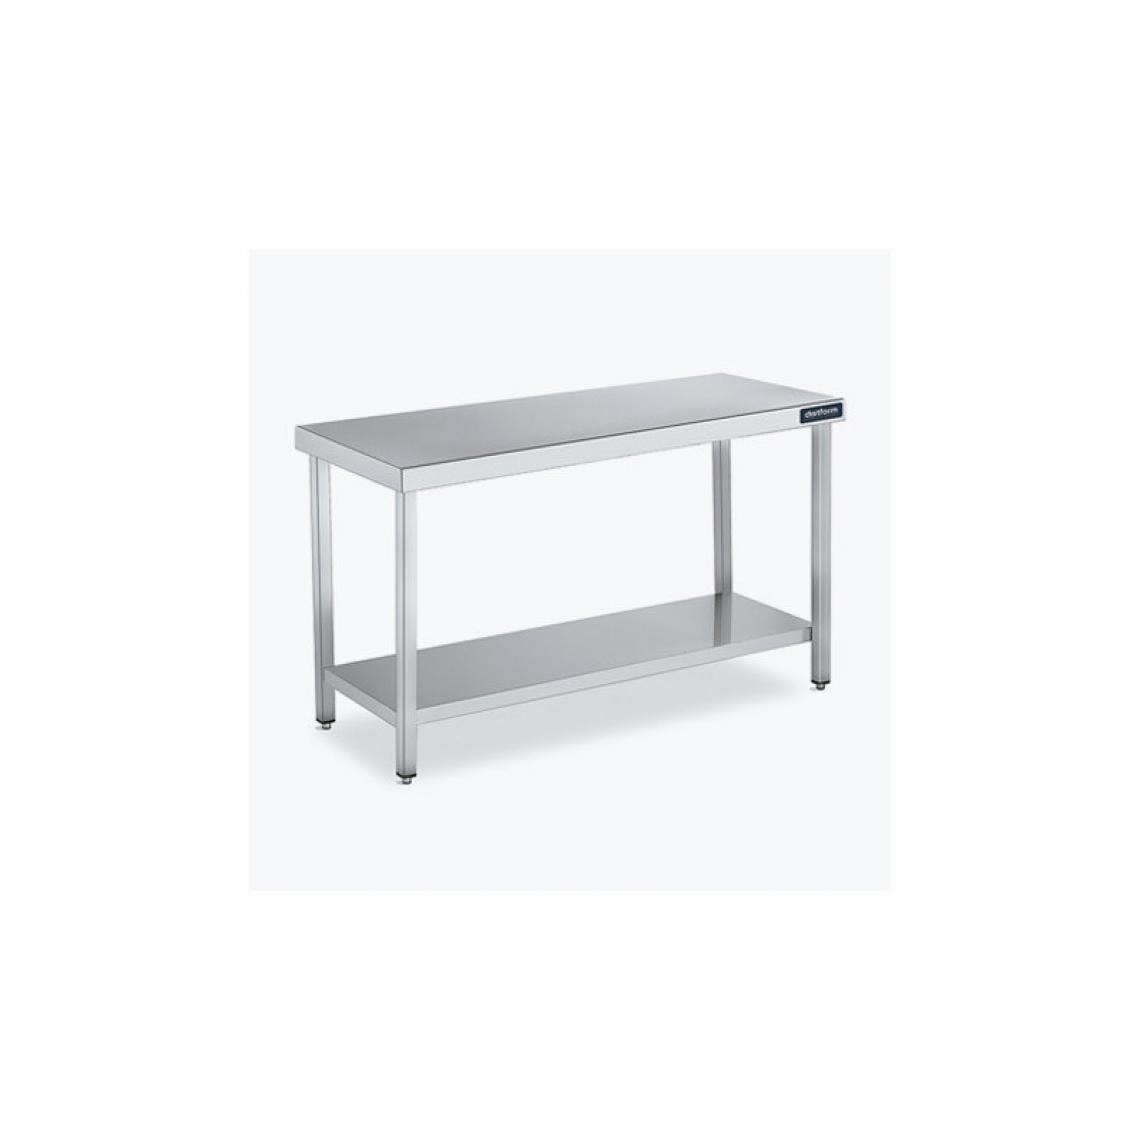 DISTFORM - Table Centrale 600x700X600 avec Étagère - Distform - Inox 18/10700x700x600mm - Tables à manger